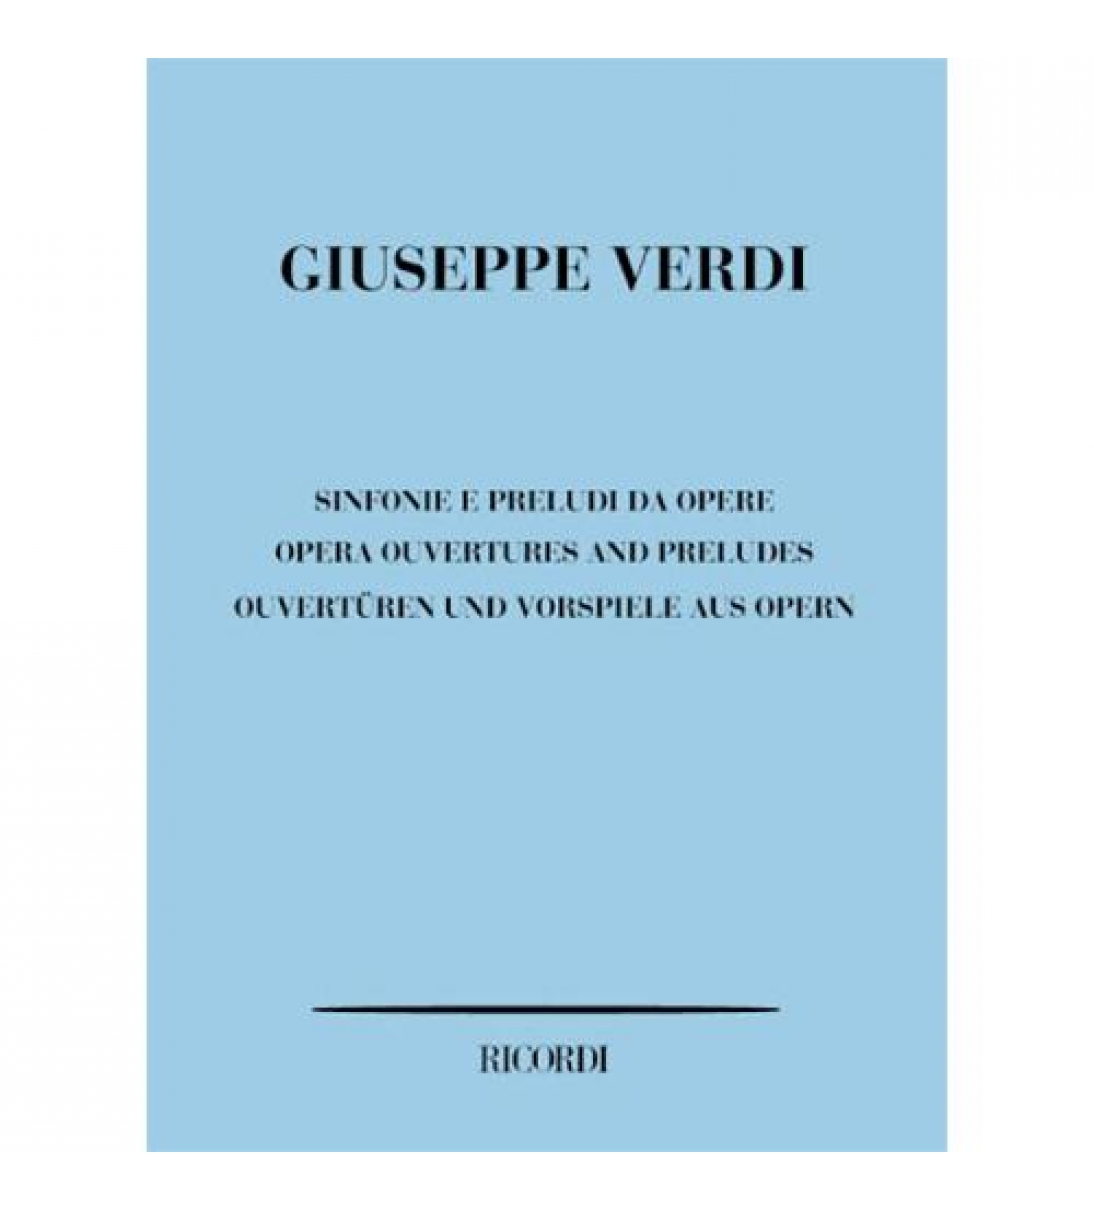 Sinfonie e preludi da opere di Verdi Giuseppe